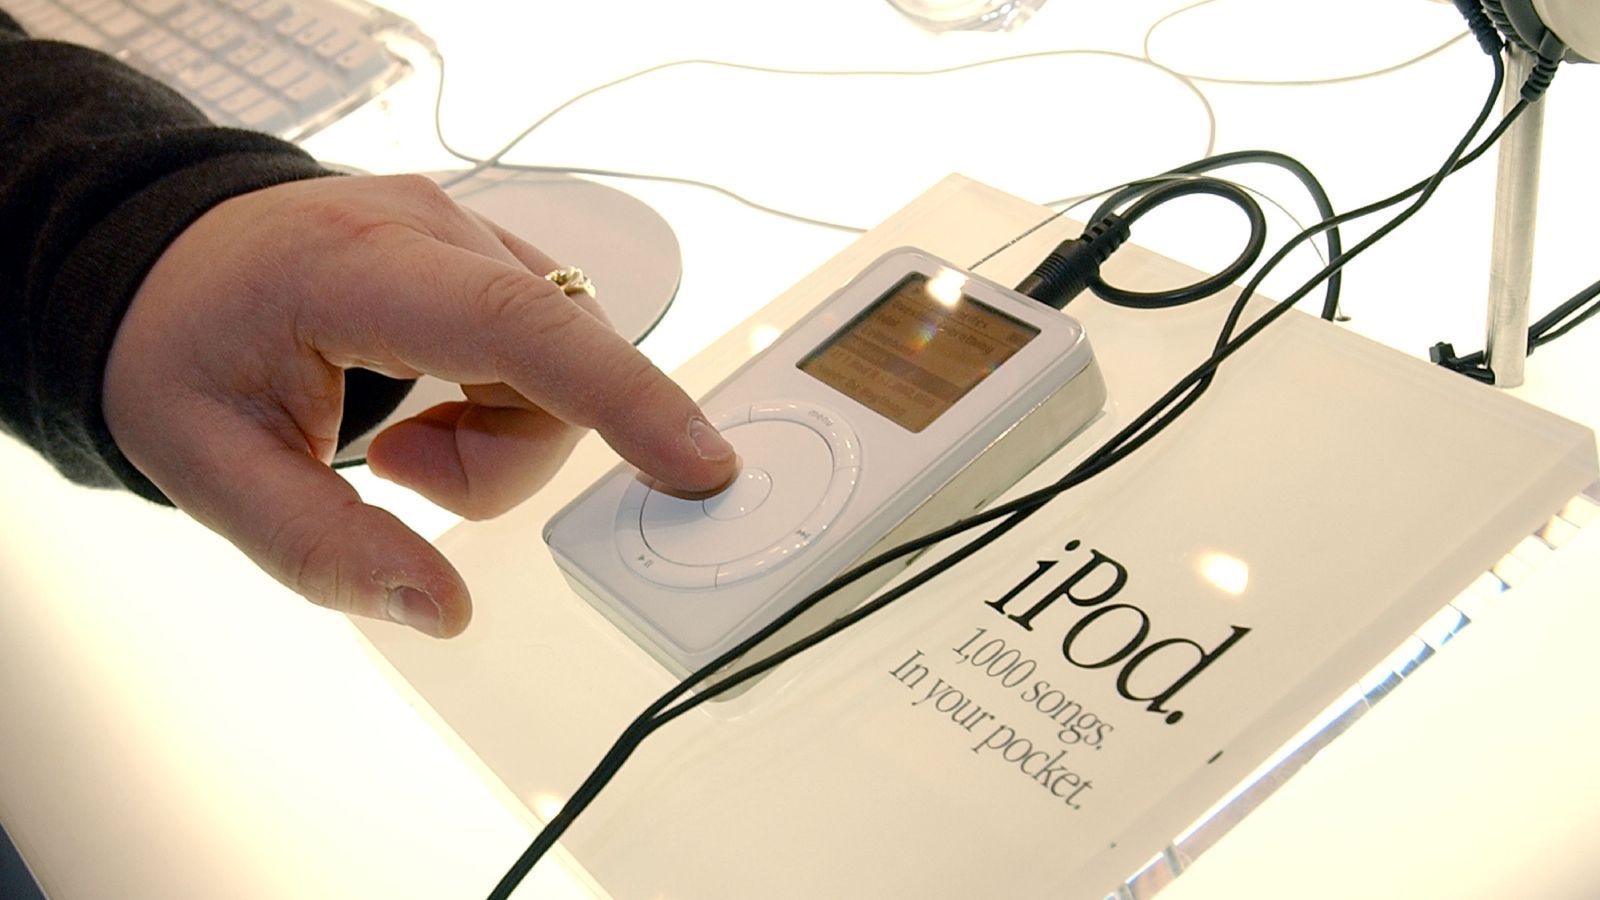 
                <strong>Der erste iPod wird vorgestellt</strong><br>
                Im Oktober 2001 stellte Apple die erste Generation des iPods vor. Der kleine MP3-Player sollte mit seiner großen Kapazität den Markt revolutionieren und war ein wichtiger Baustein von Apple auf dem Weg zu einer der erfolgreichsten Marken in diesem Jahrtausend.
              